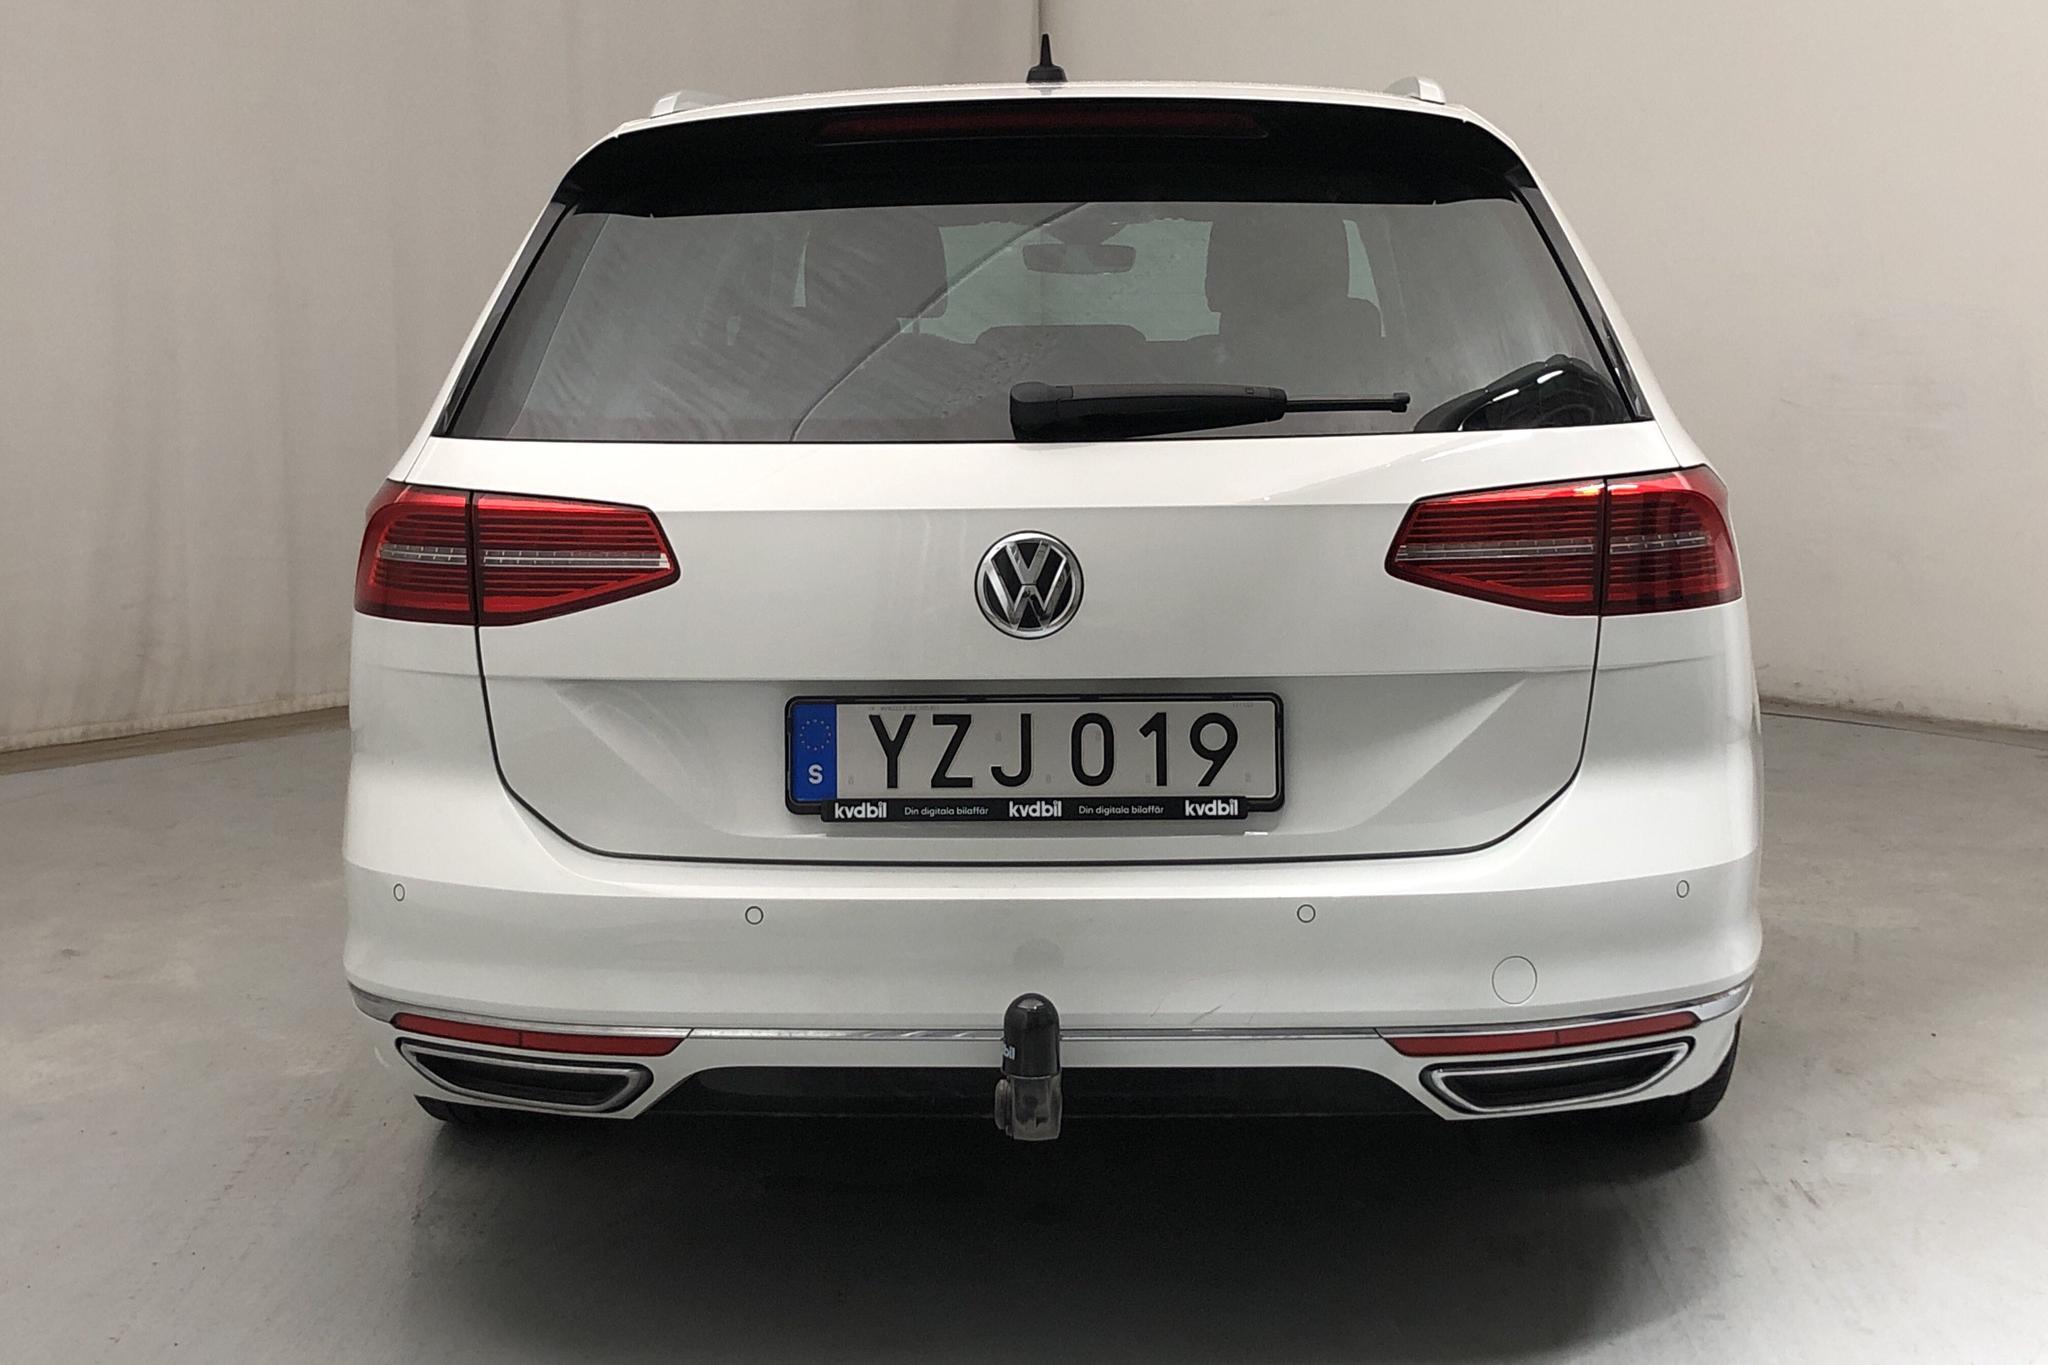 VW Passat 2.0 TDI Sportscombi (190hk) - 7 964 mil - Automat - vit - 2018